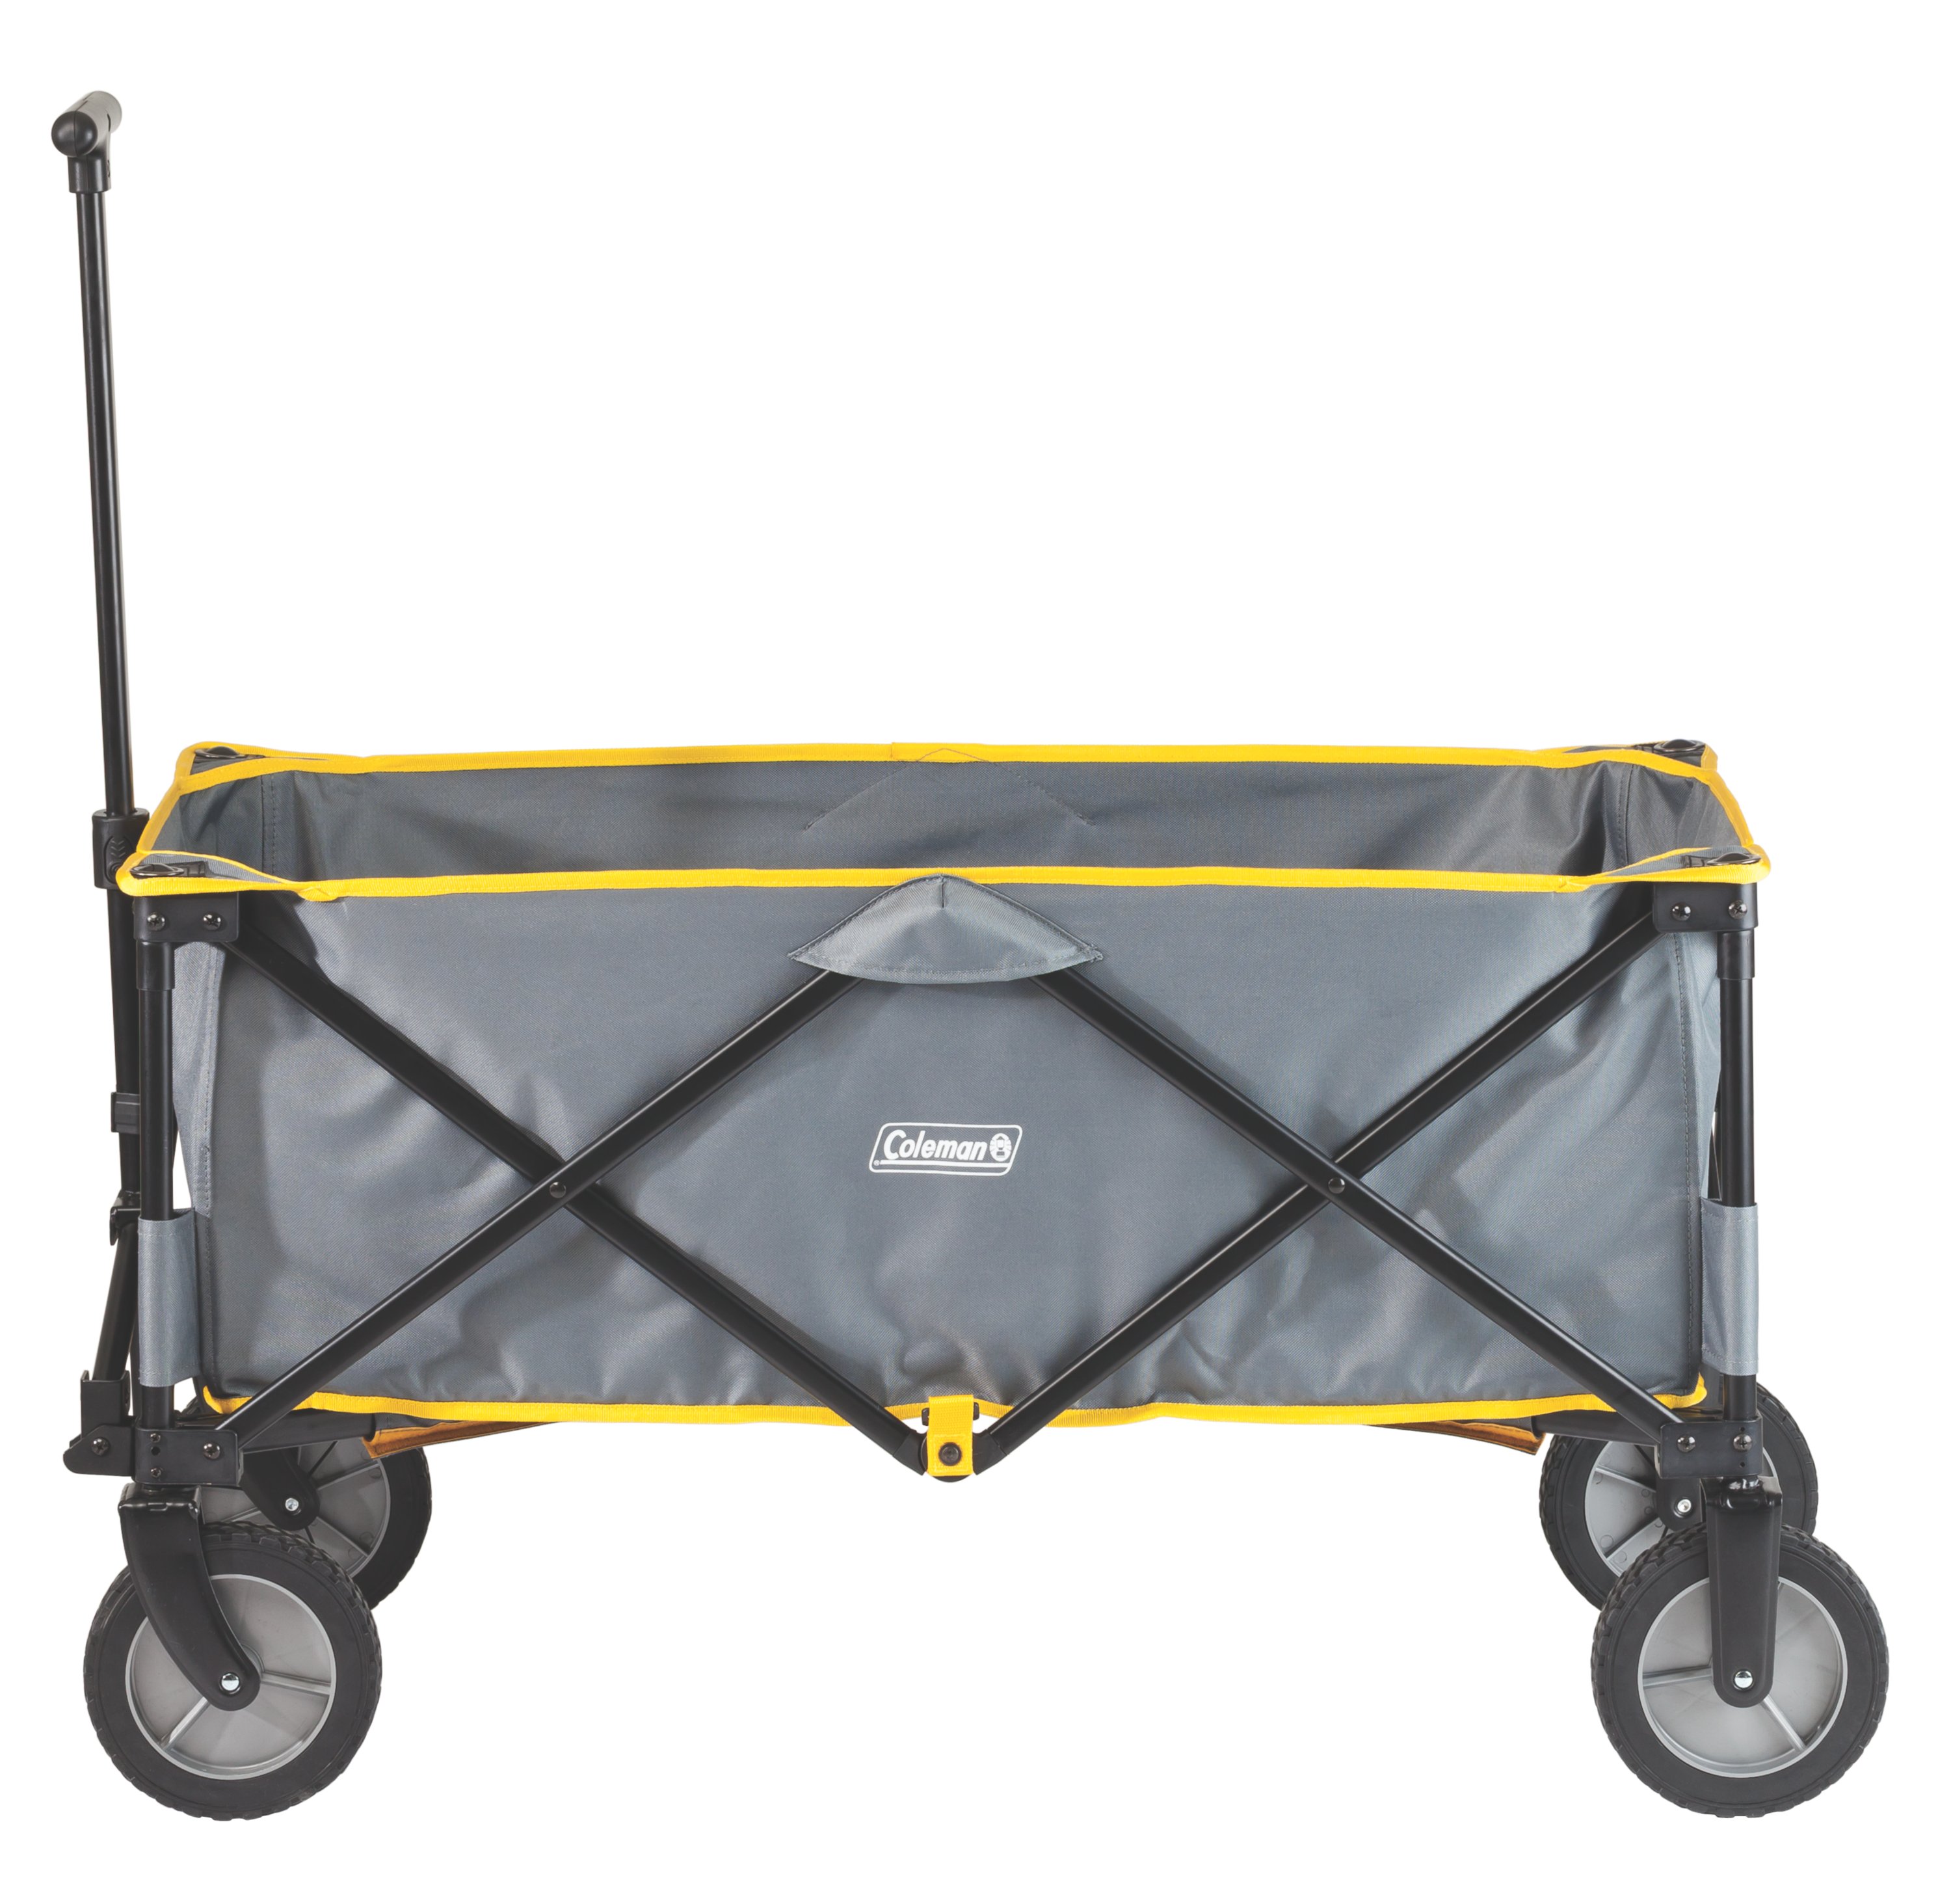 Easy Folding Portable Outdoor Wagon Garden Picnic Cart for Fishing